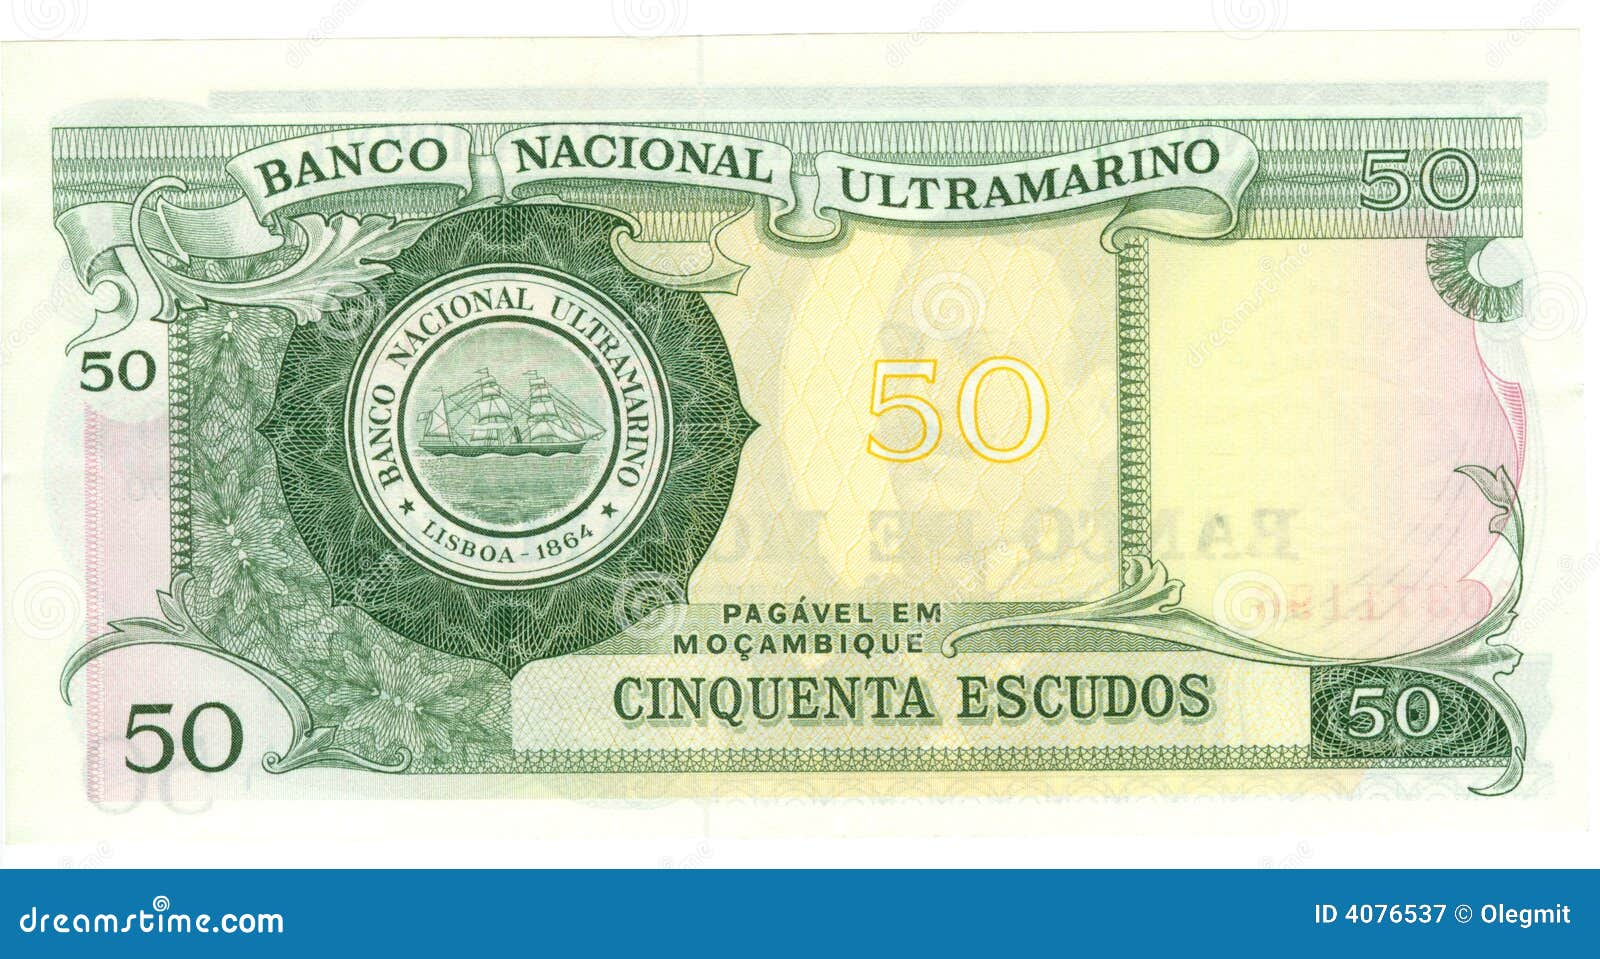 50 escudo bill of mozambique